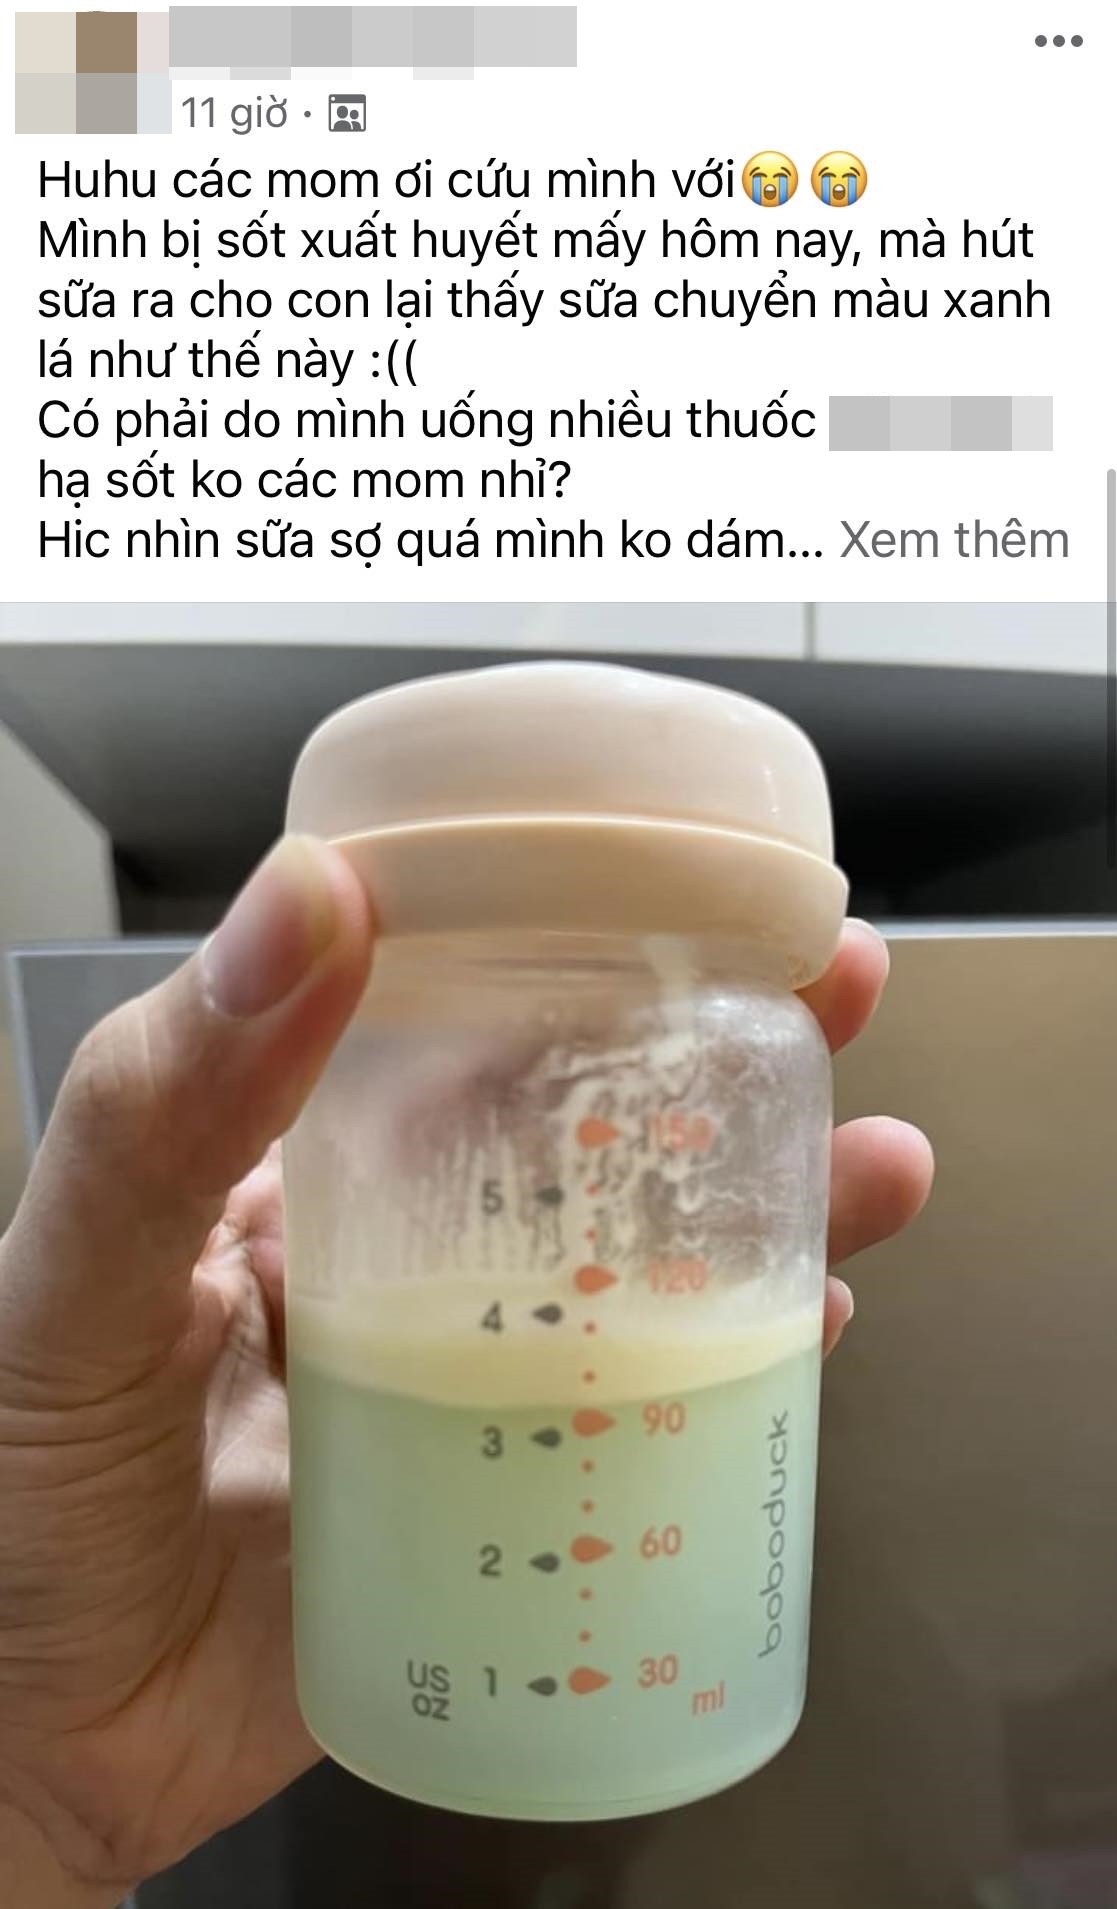 Mẹ hoảng hốt khi sữa chuyển từ màu trắng sang màu xanh lá khi uống kháng sinh, bác sĩ giải thích nguyên do - Ảnh 1.